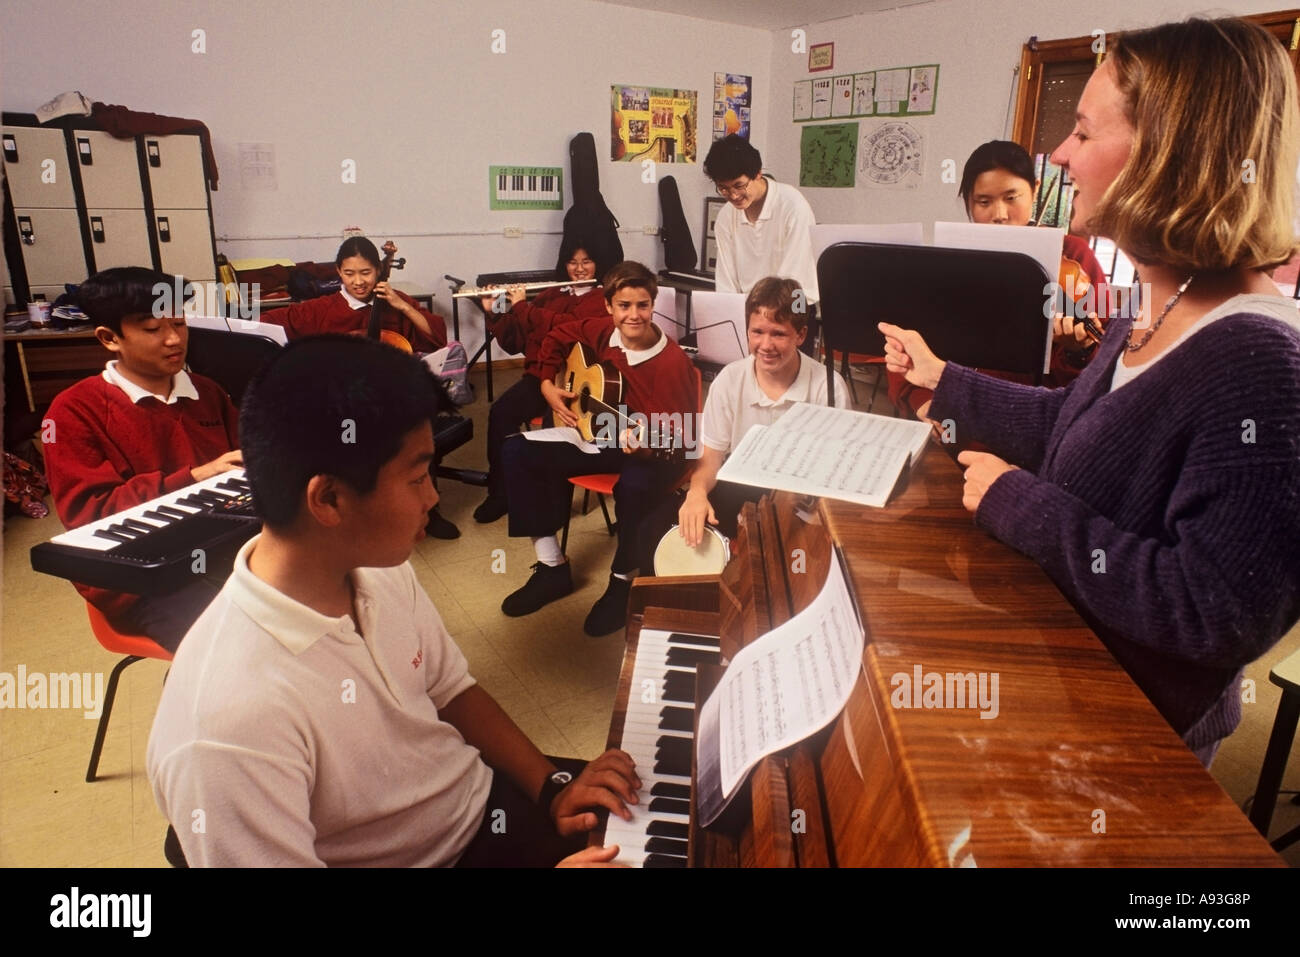 Lezione di musica in aula con alunni da 9-12 anni che suonano vari strumenti con una maestra entusiasta che conduce una prova Foto Stock